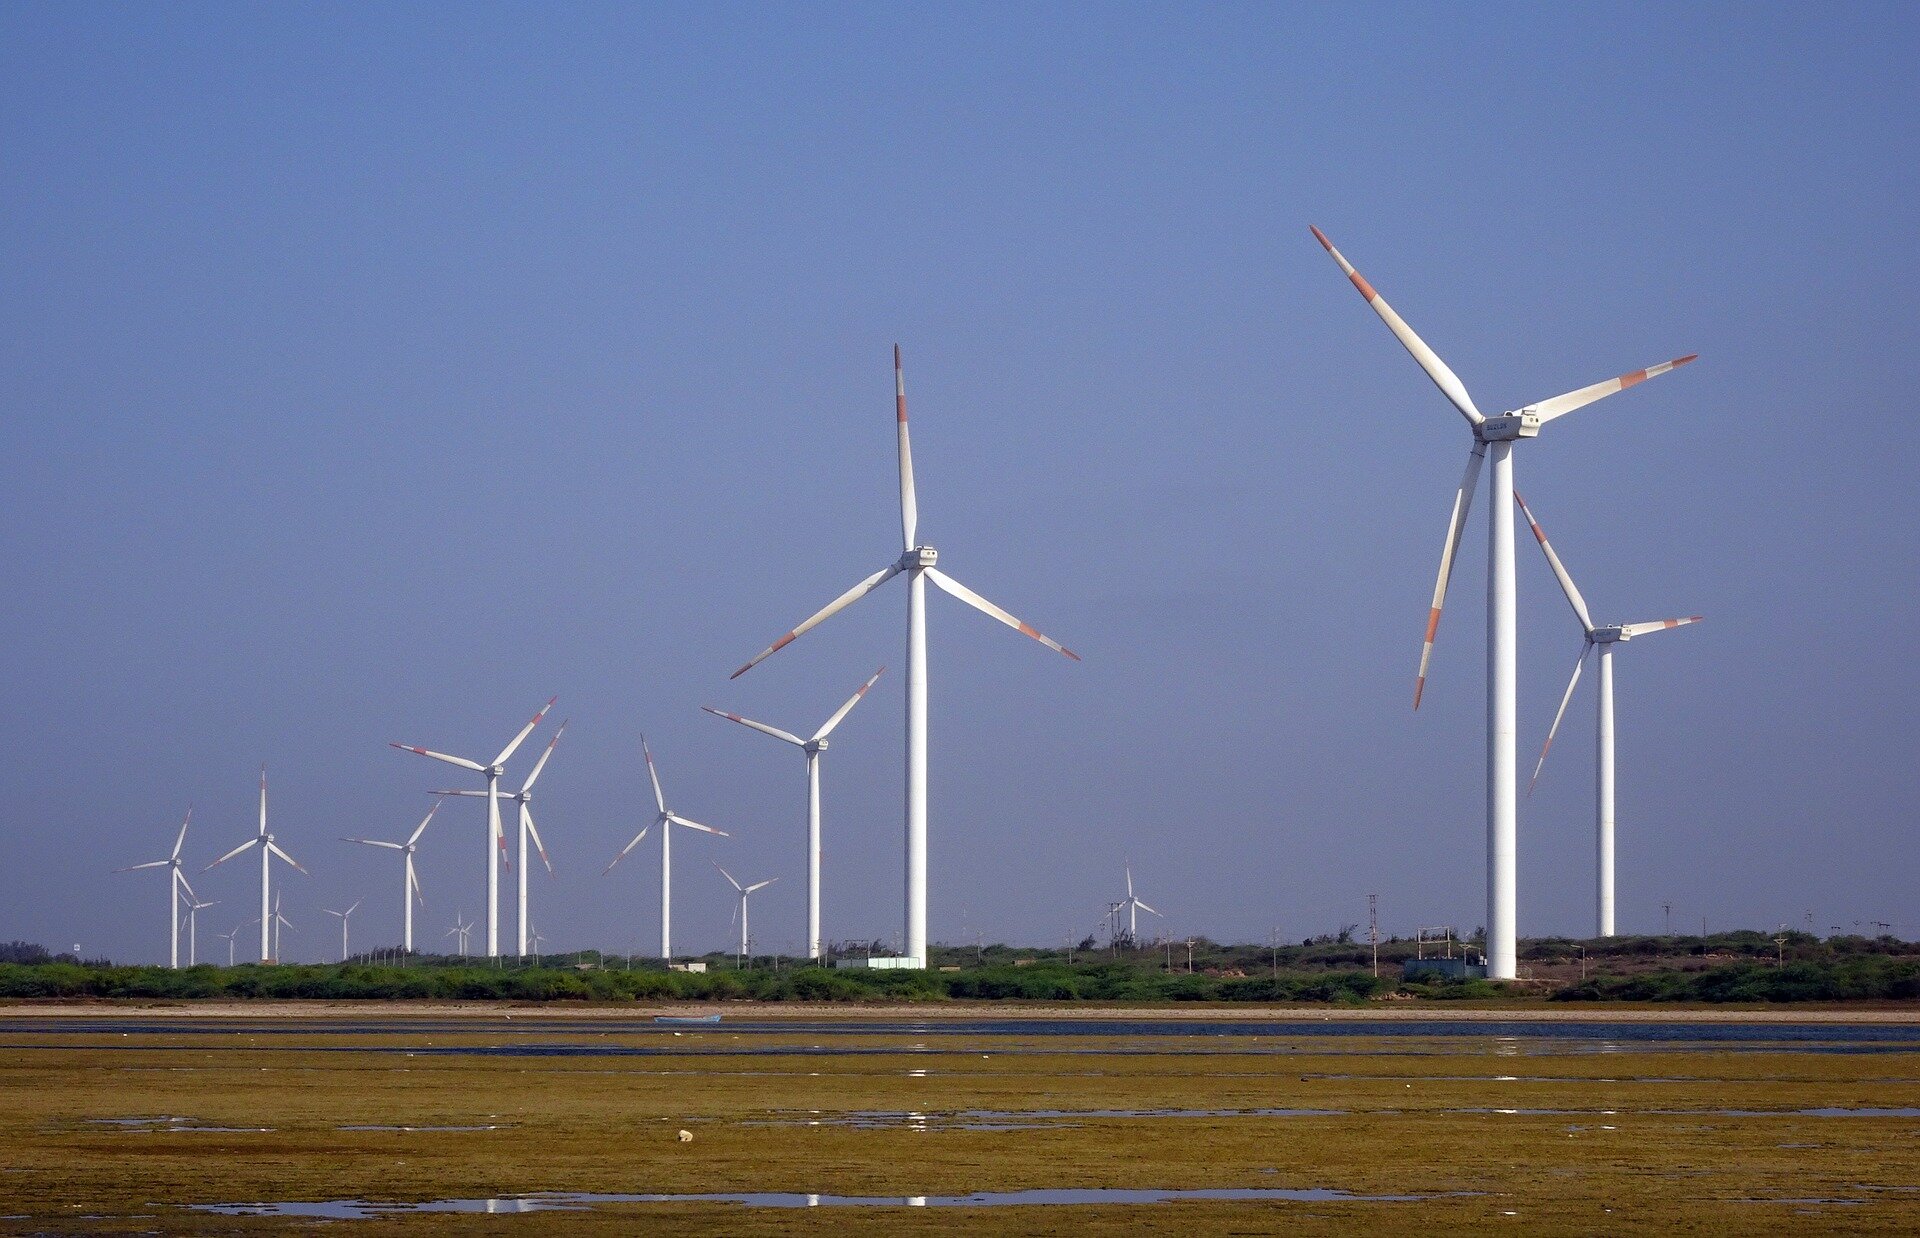 Zdjęcie przedstawia grupę kilkunastu turbin wiatrowych stojących na płaskim terenie. Turbina wiatrowa to urządzenie zamieniające energię kinetyczną wiatru na pracę mechaniczną w postaci ruchu obrotowego wirnika. Zbudowana jest z takich elementów jak fundament, wieża, gondola z przekładnią, generator, układ sterowania oraz łopaty wirnika. Mylnie nazywana elektrownią wiatrową – turbina wiatrowa stanowi zasadniczy element elektrowni wiatrowej.